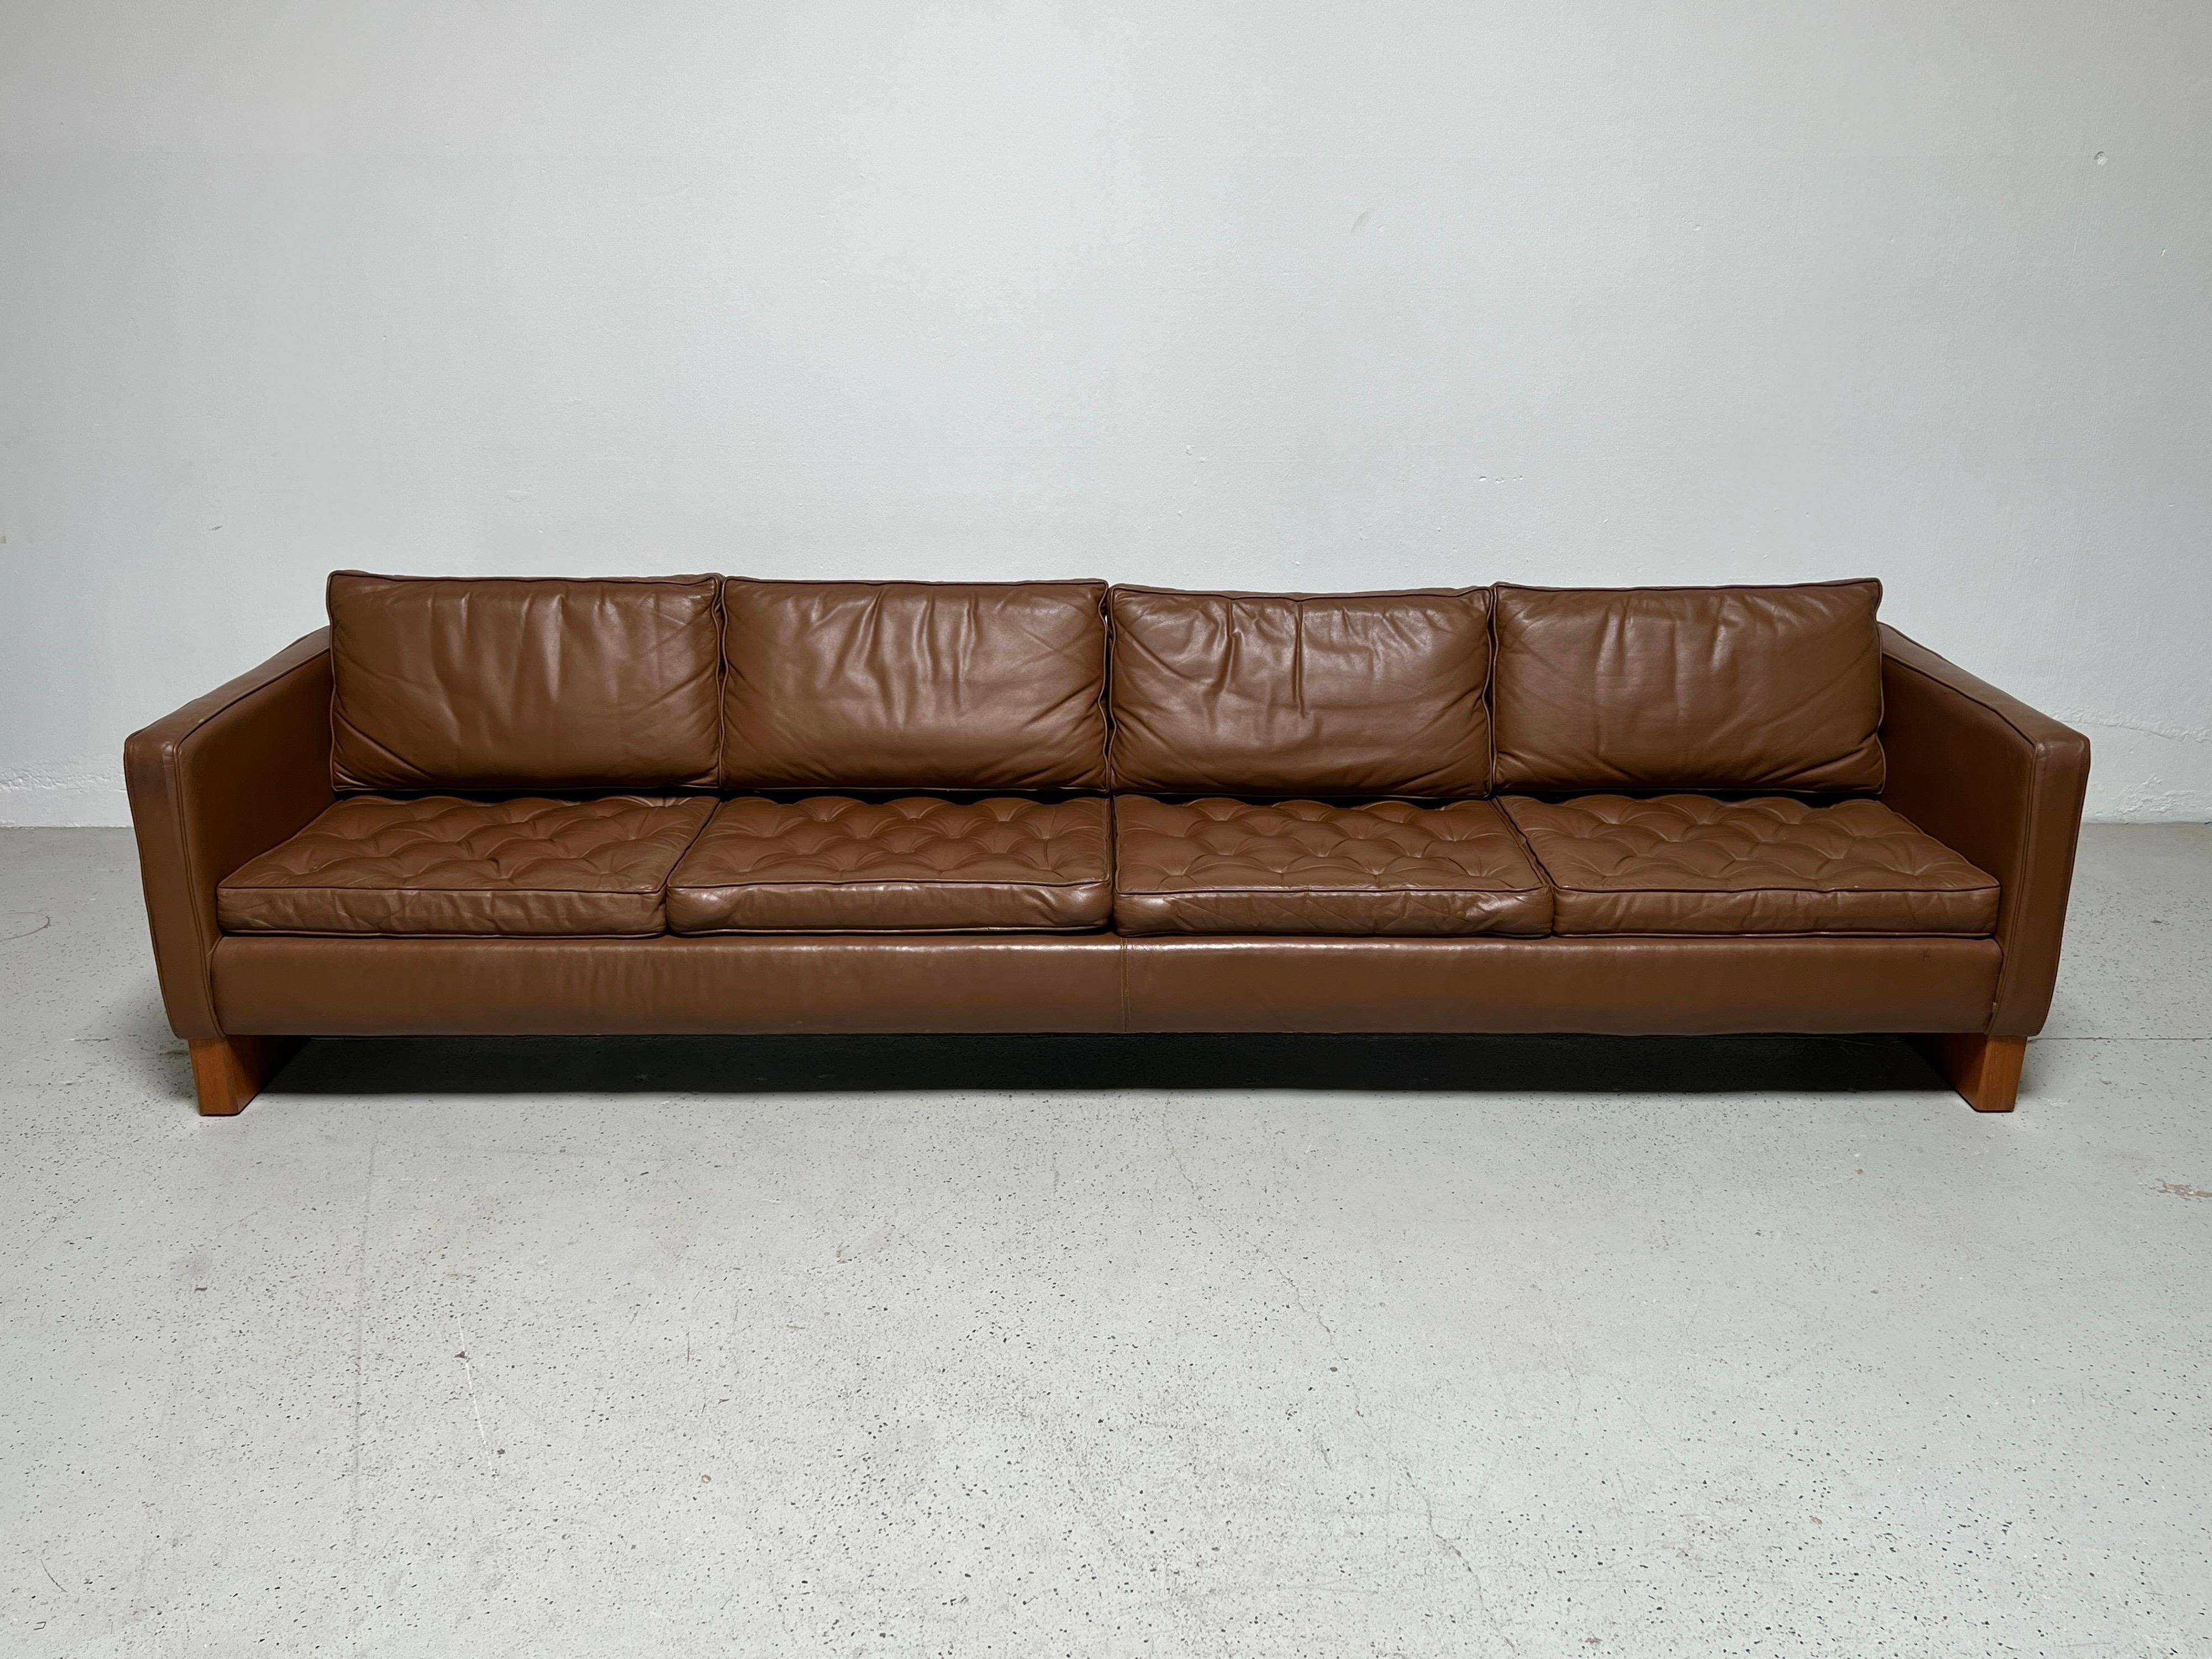 Ein großes Viersitzer-Sofa, entworfen von Mies van den Rohe für Knoll. Ein seltenes Design, das nur in begrenzter Stückzahl hergestellt wird. Diese Version mit Eichenholzkufen und neueren Lederbezügen.